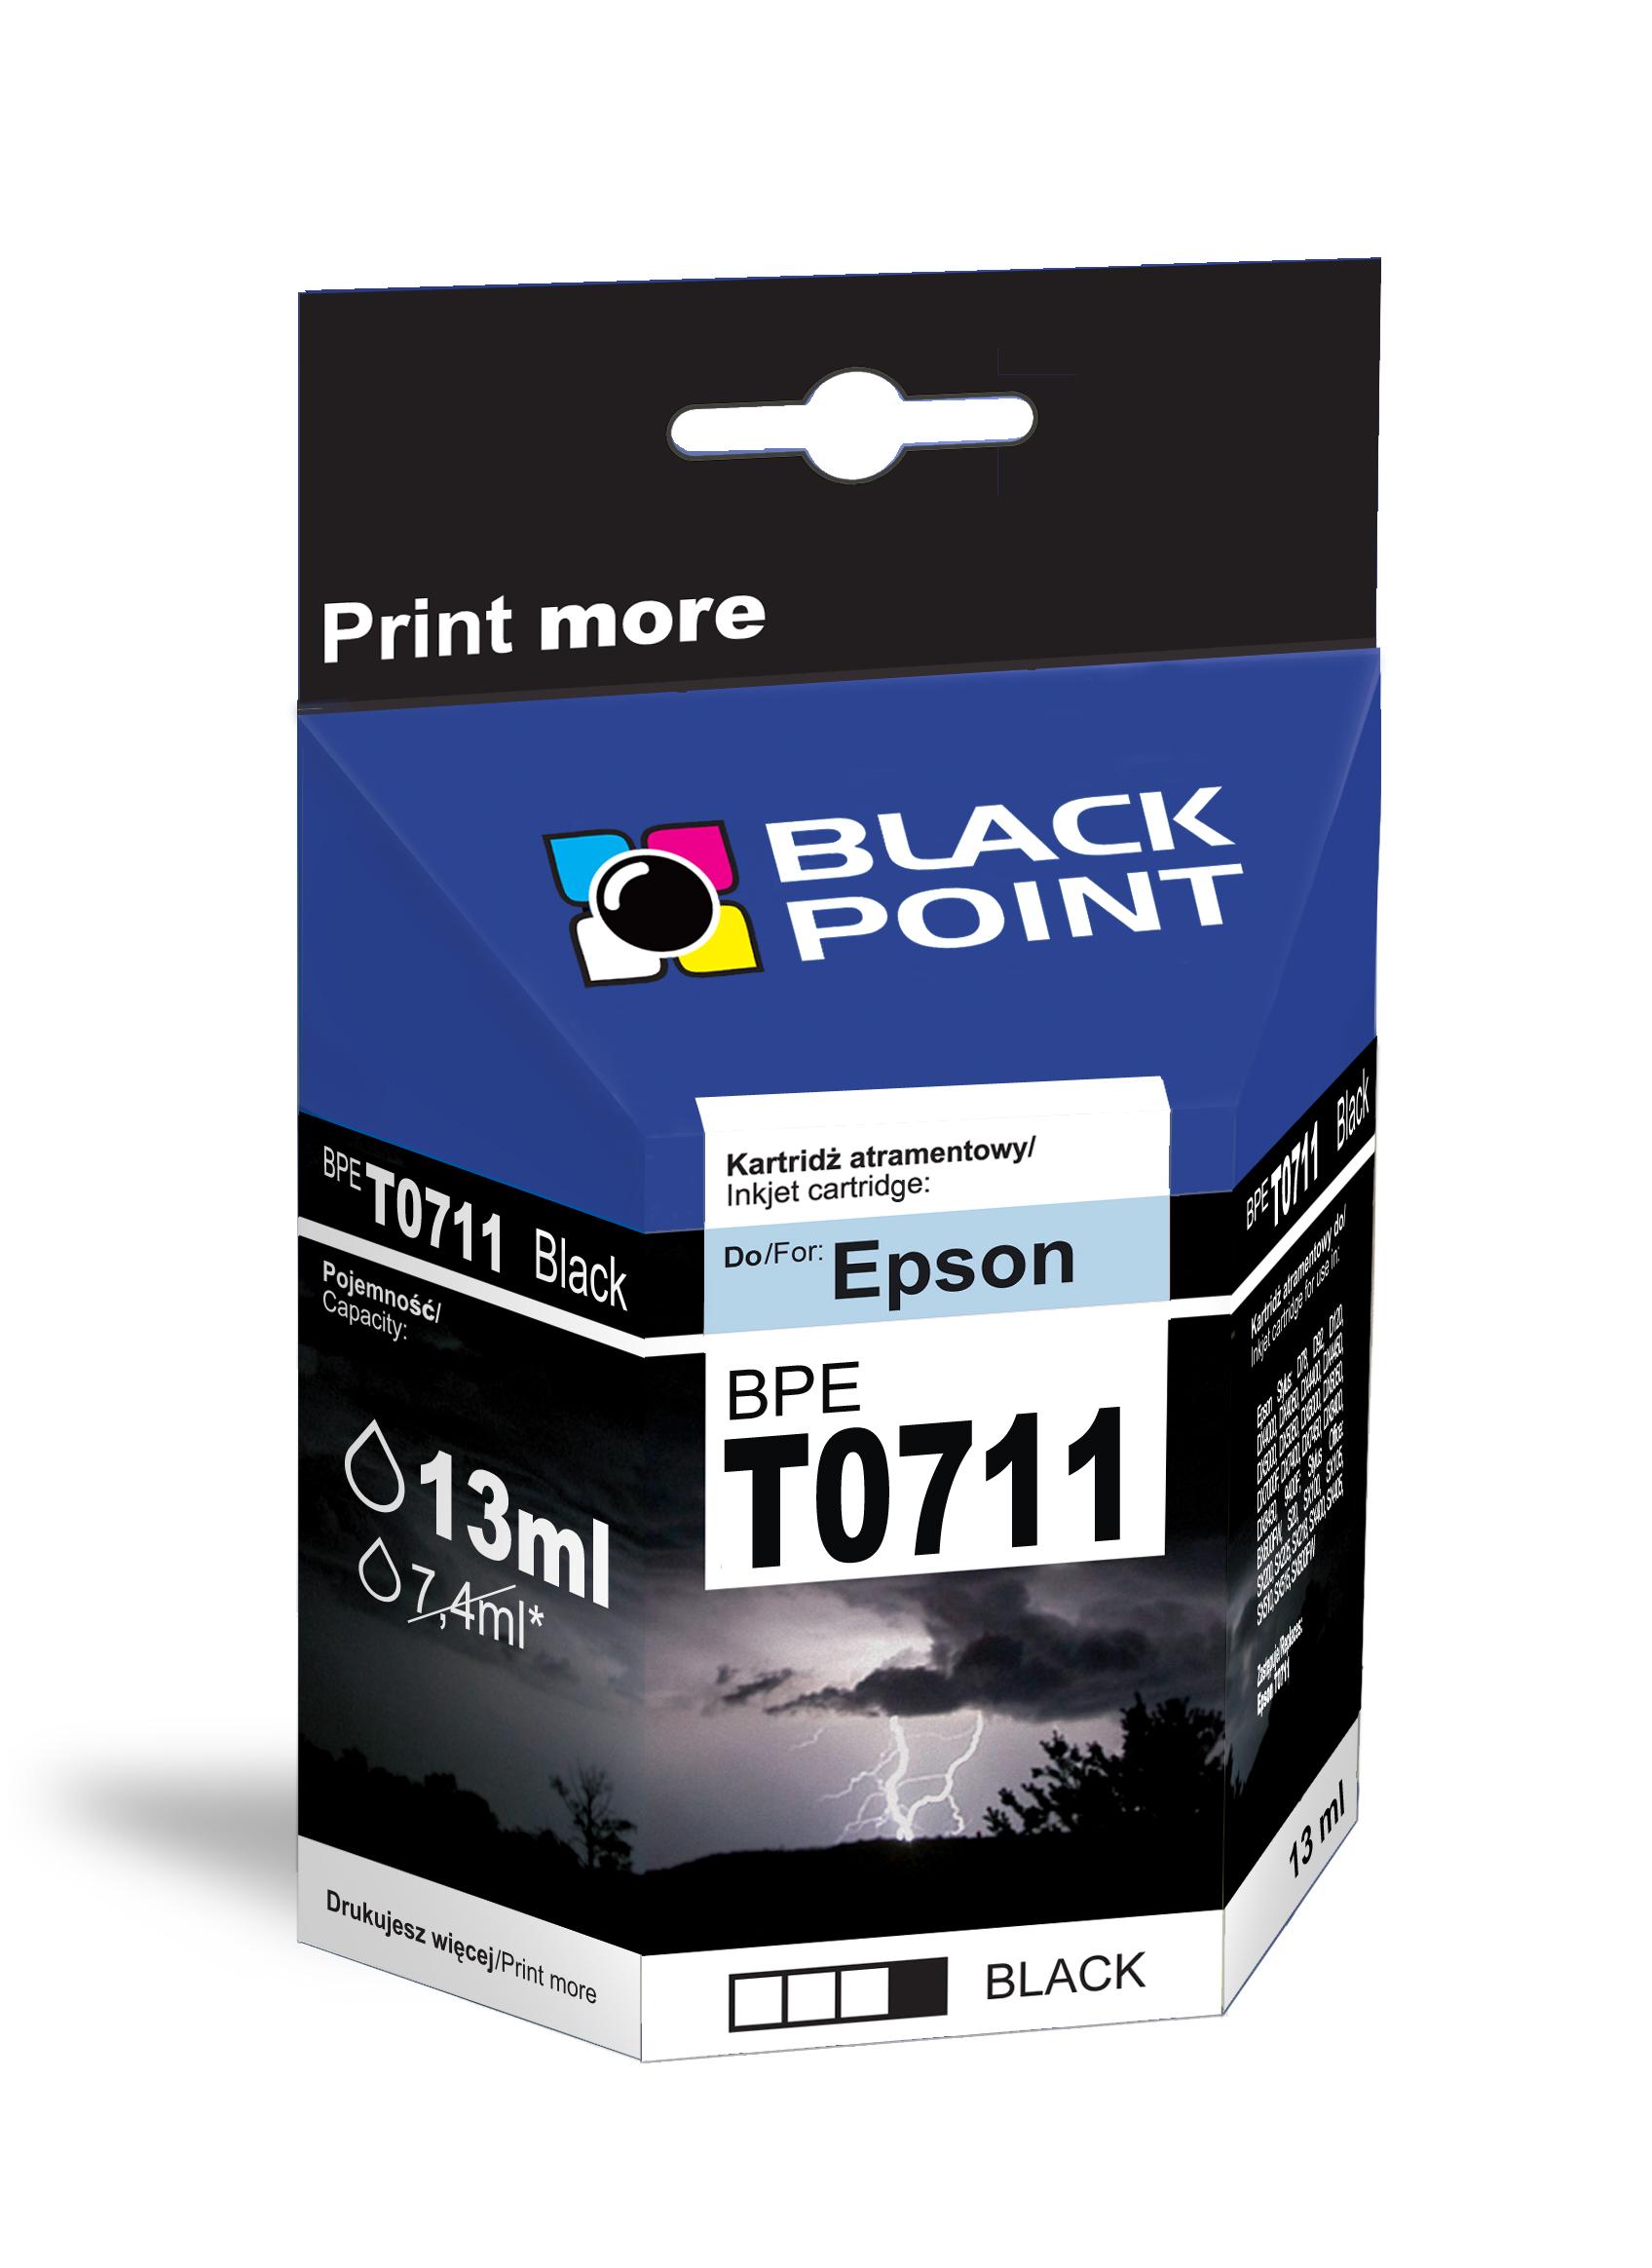 CMYK - Black Point tusz BPET0711 zastpuje Epson T0711, czarny